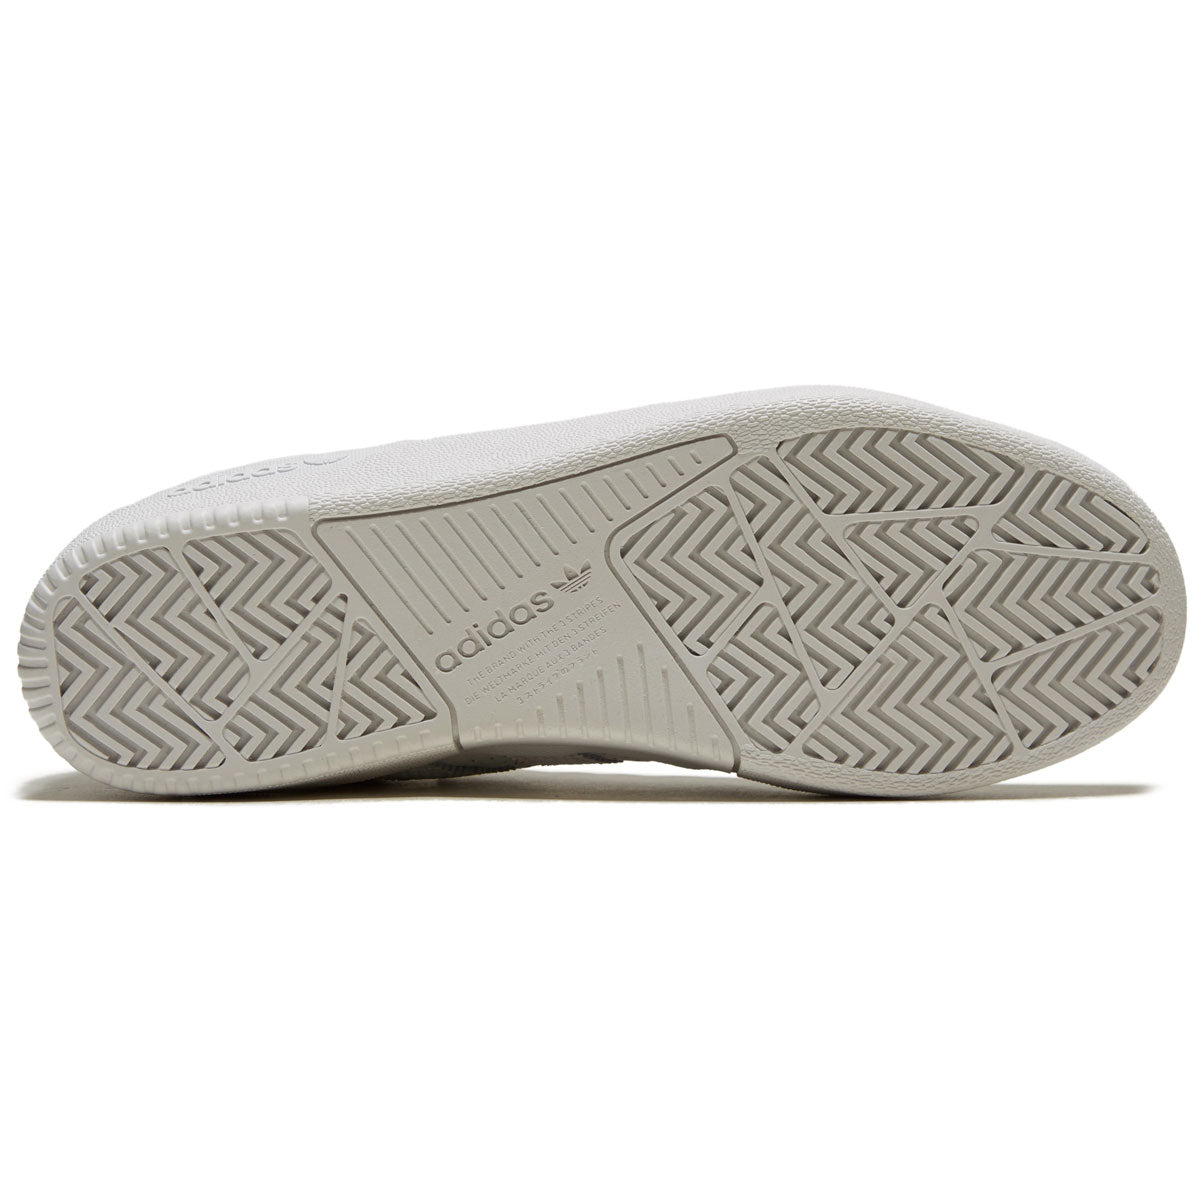 Adidas Tyshawn Shoes - White/White/Gold Metallic image 4